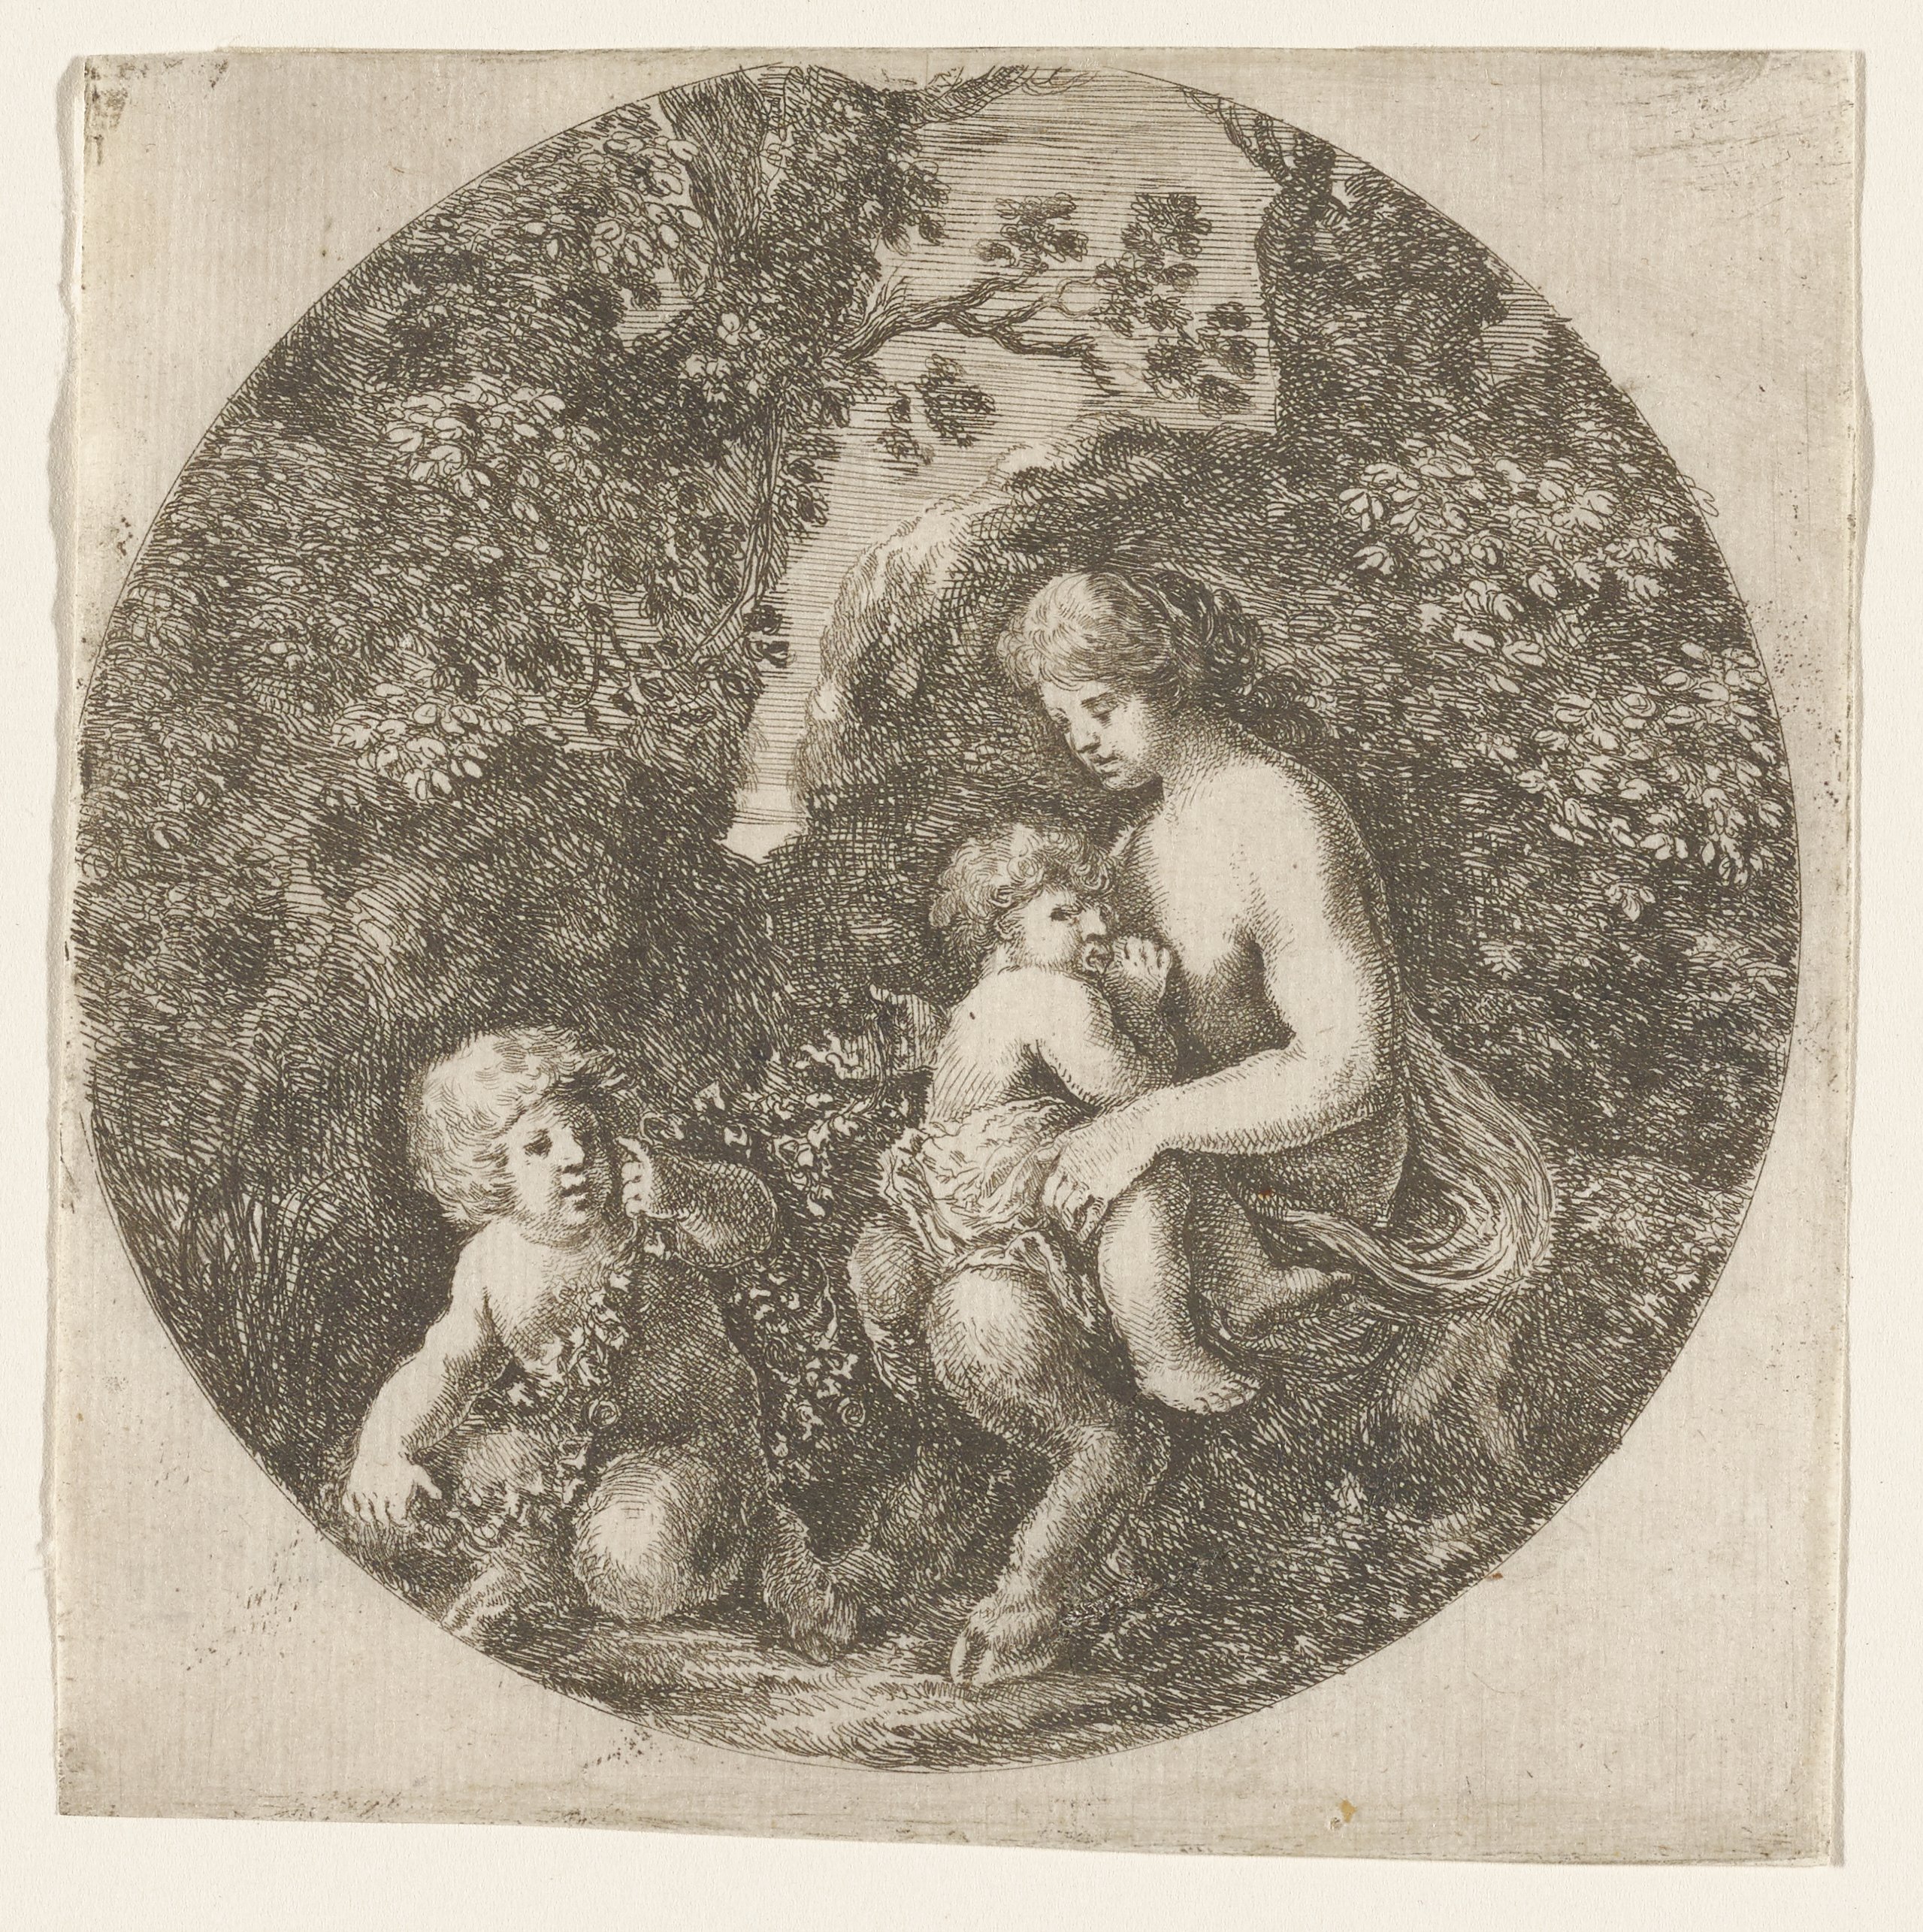 The Satyr's Wife, Stefano della Bella, 1656